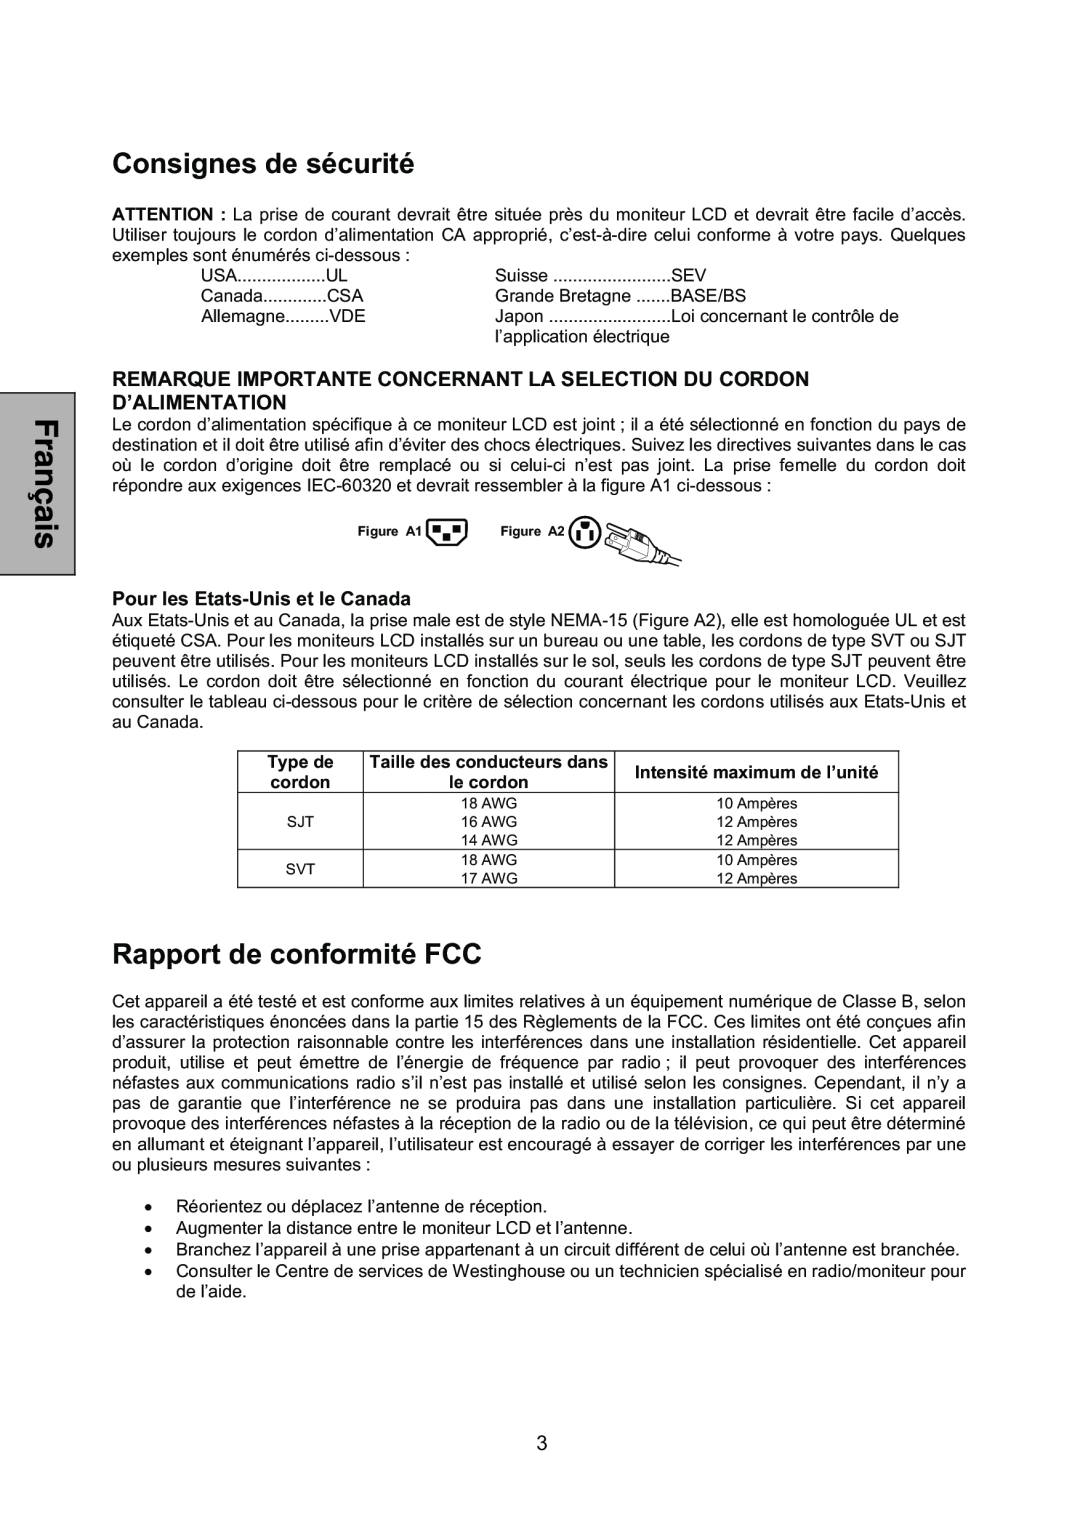 Westinghouse L1928NV manual Consignes de sécurité, Rapport de conformité FCC, Pour les Etats-Unis et le Canada 